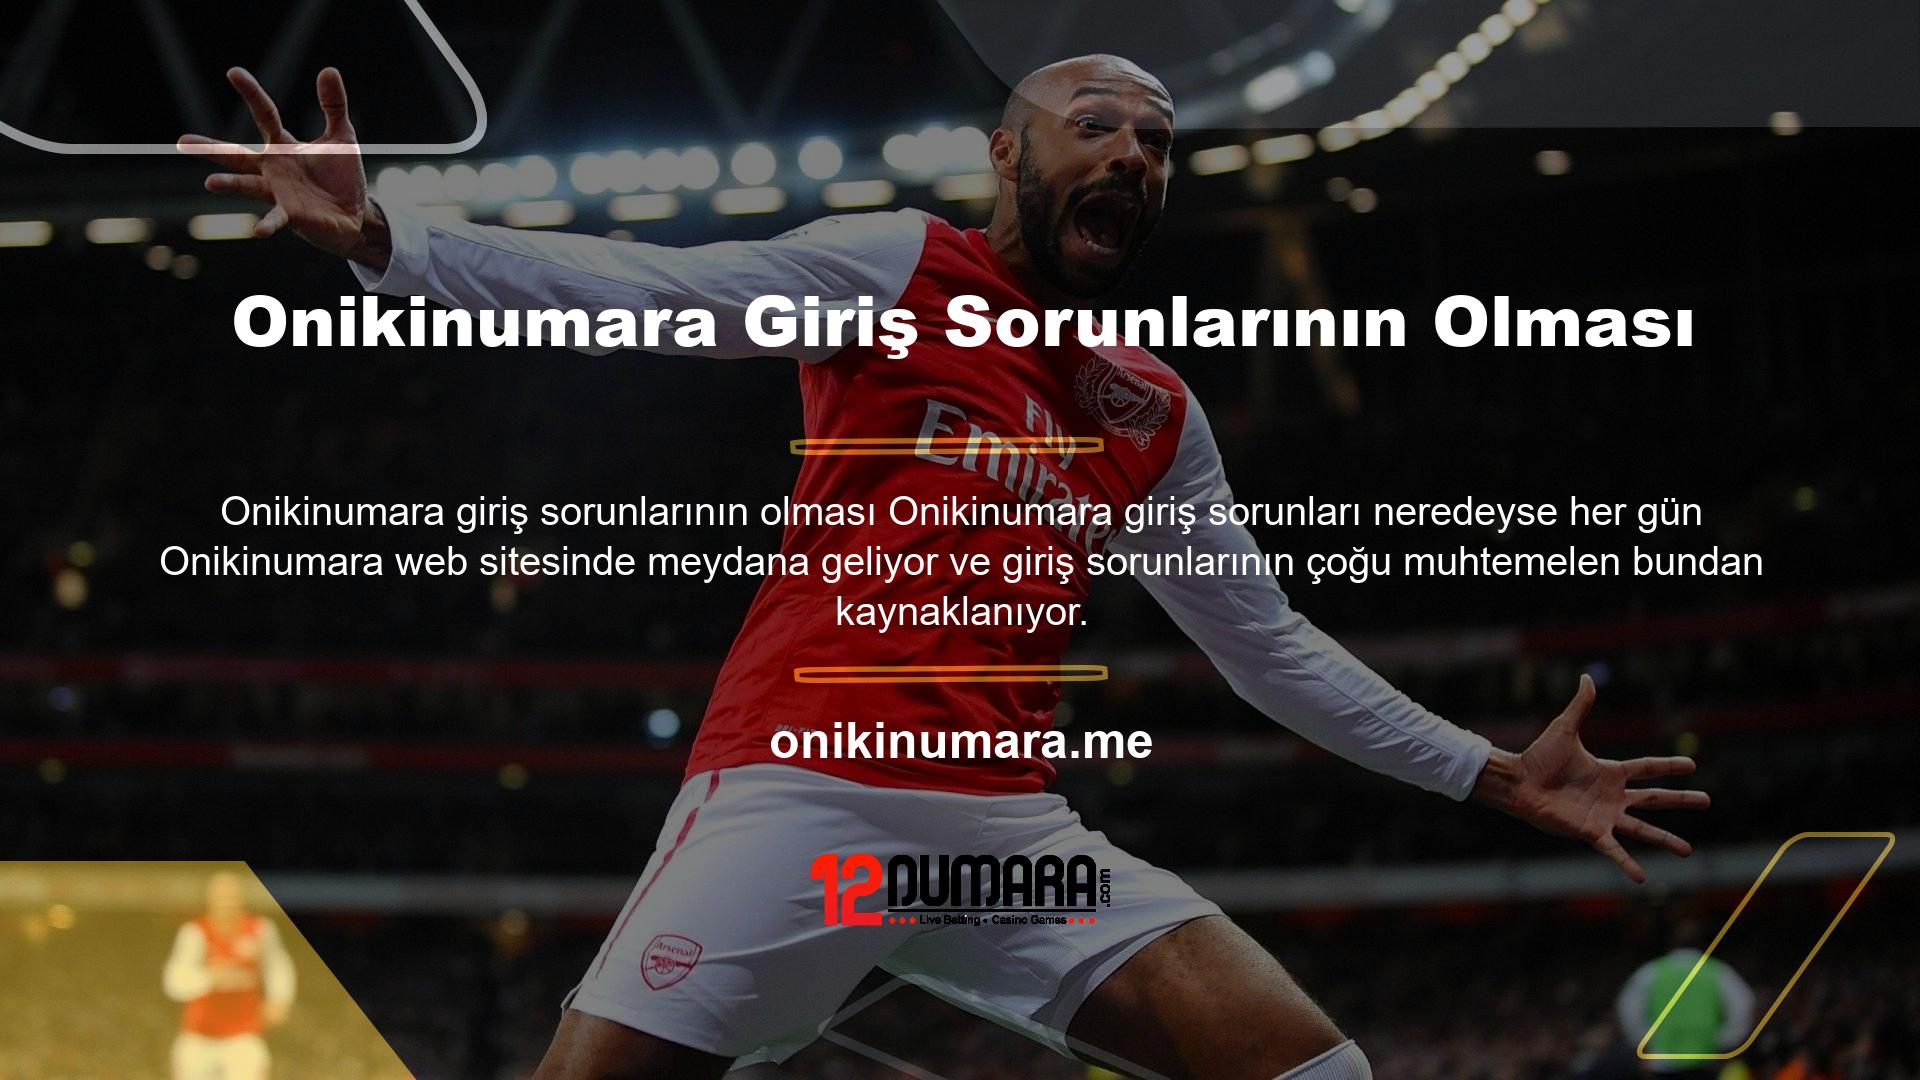 Onikinumara, Türk destek sitesi olarak bu konularda bilgi vermektedir